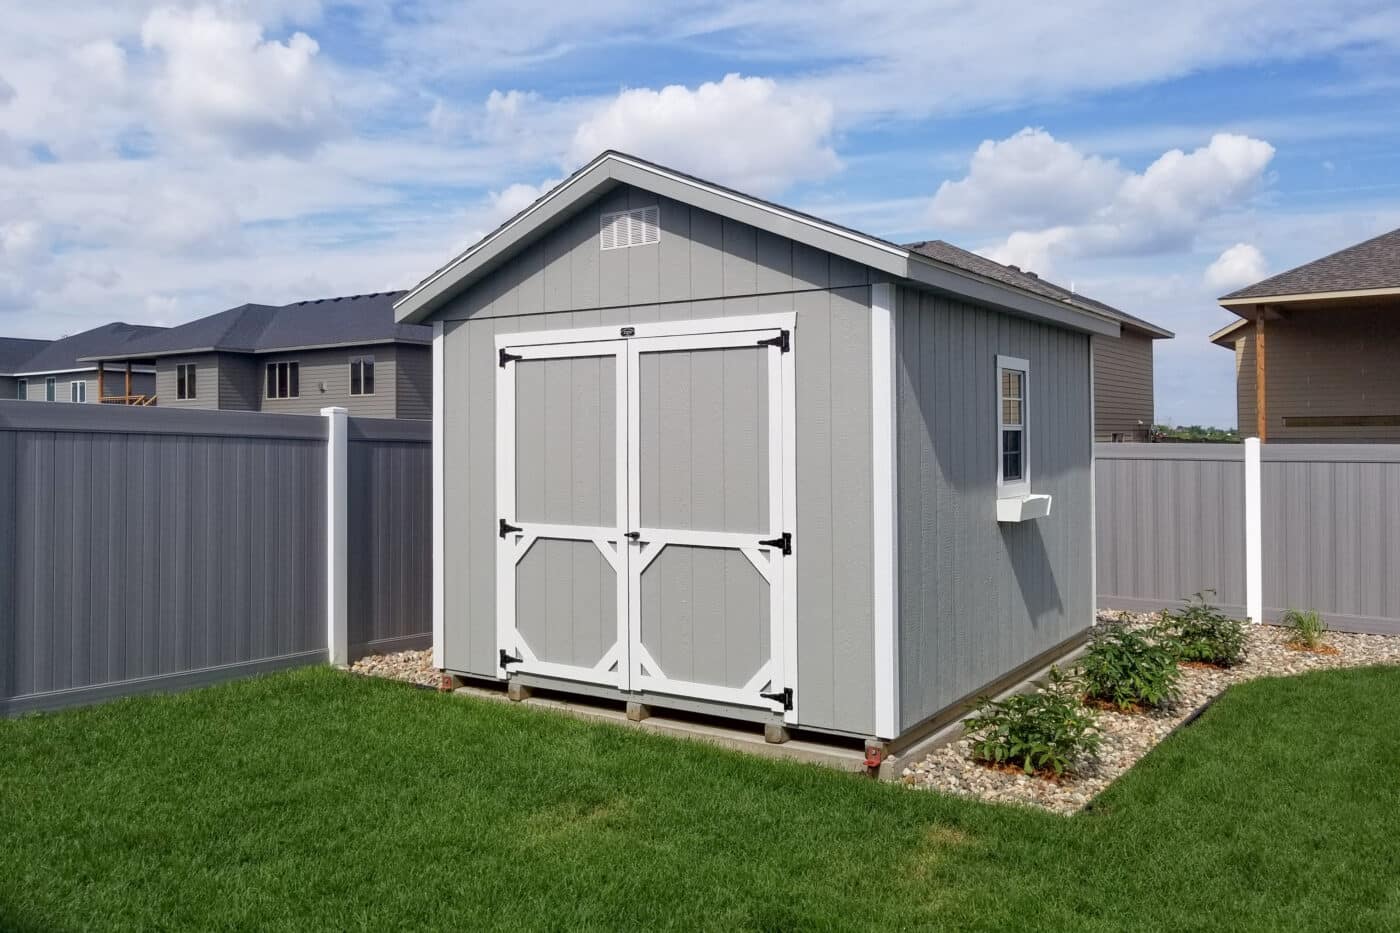 Grey a-frame storage shed in backyard